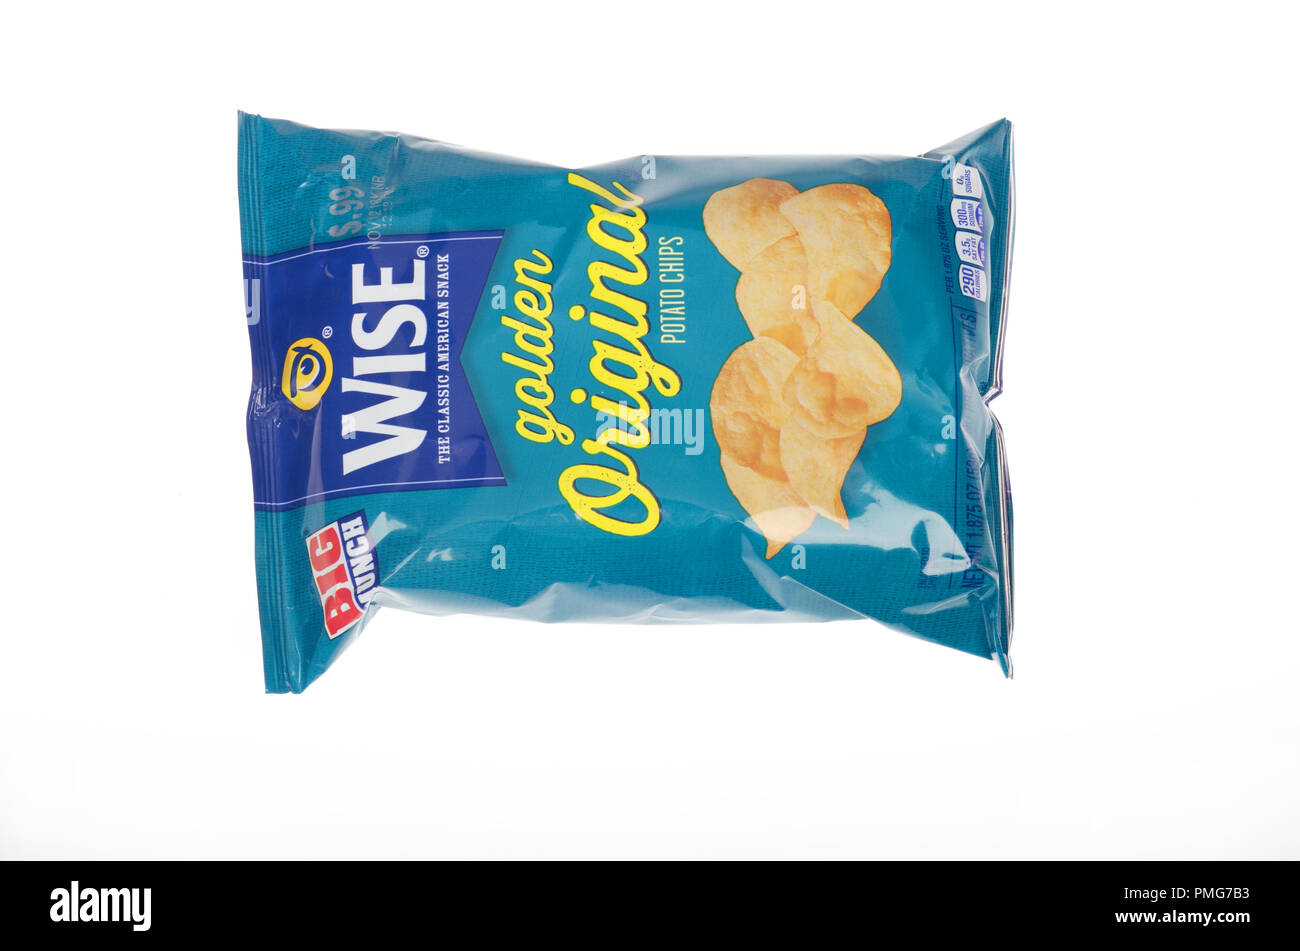 Beutel oder ein Paket von Wise Golden Original Pommes frites oder Chips auf weißem Hintergrund Stockfoto